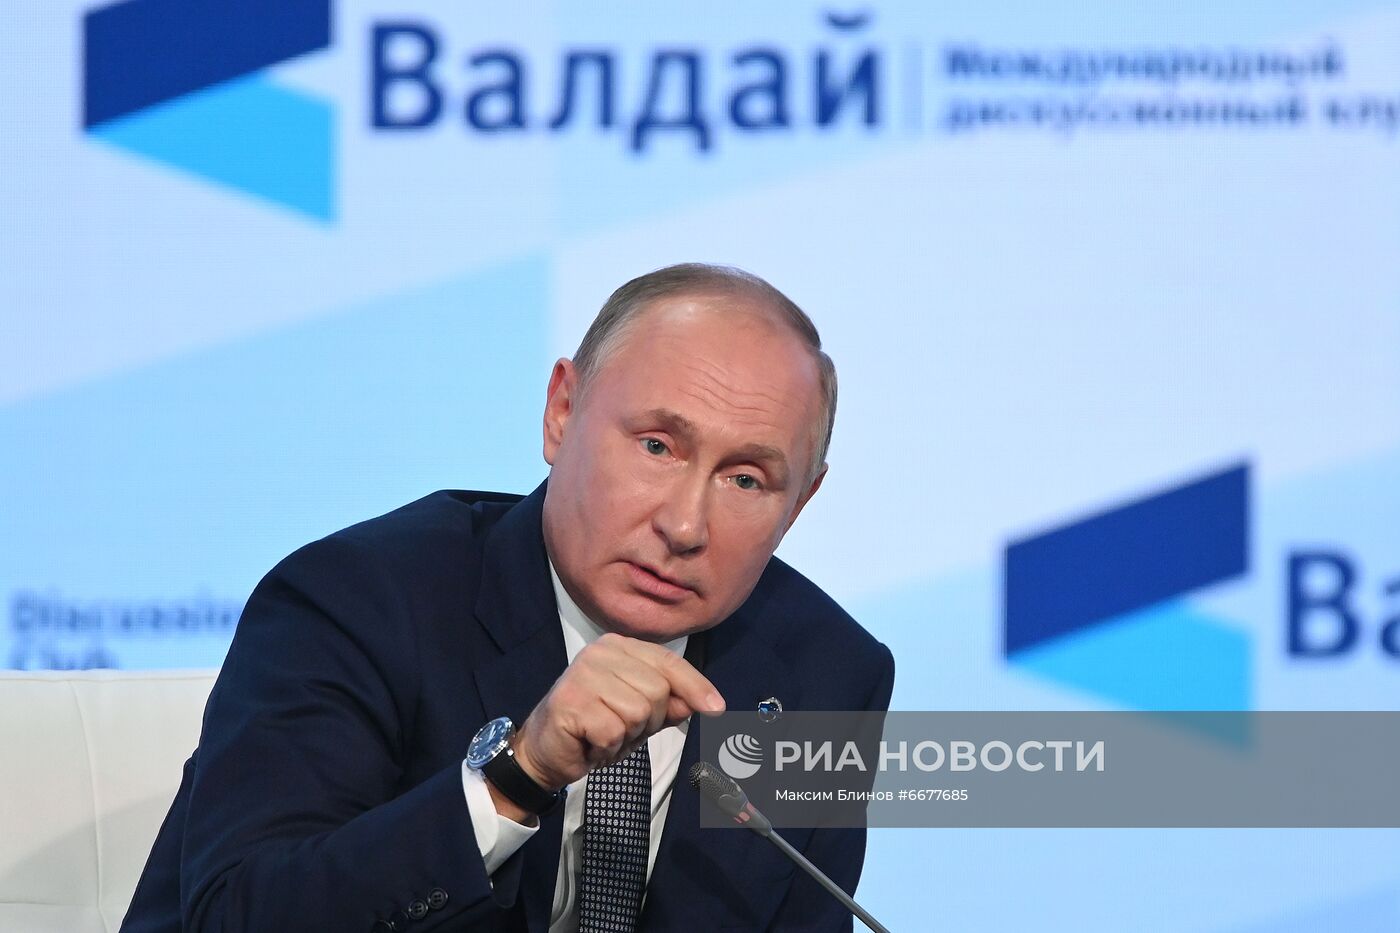 Президент РФ В. Путин принял участие в заседании клуба "Валдай"